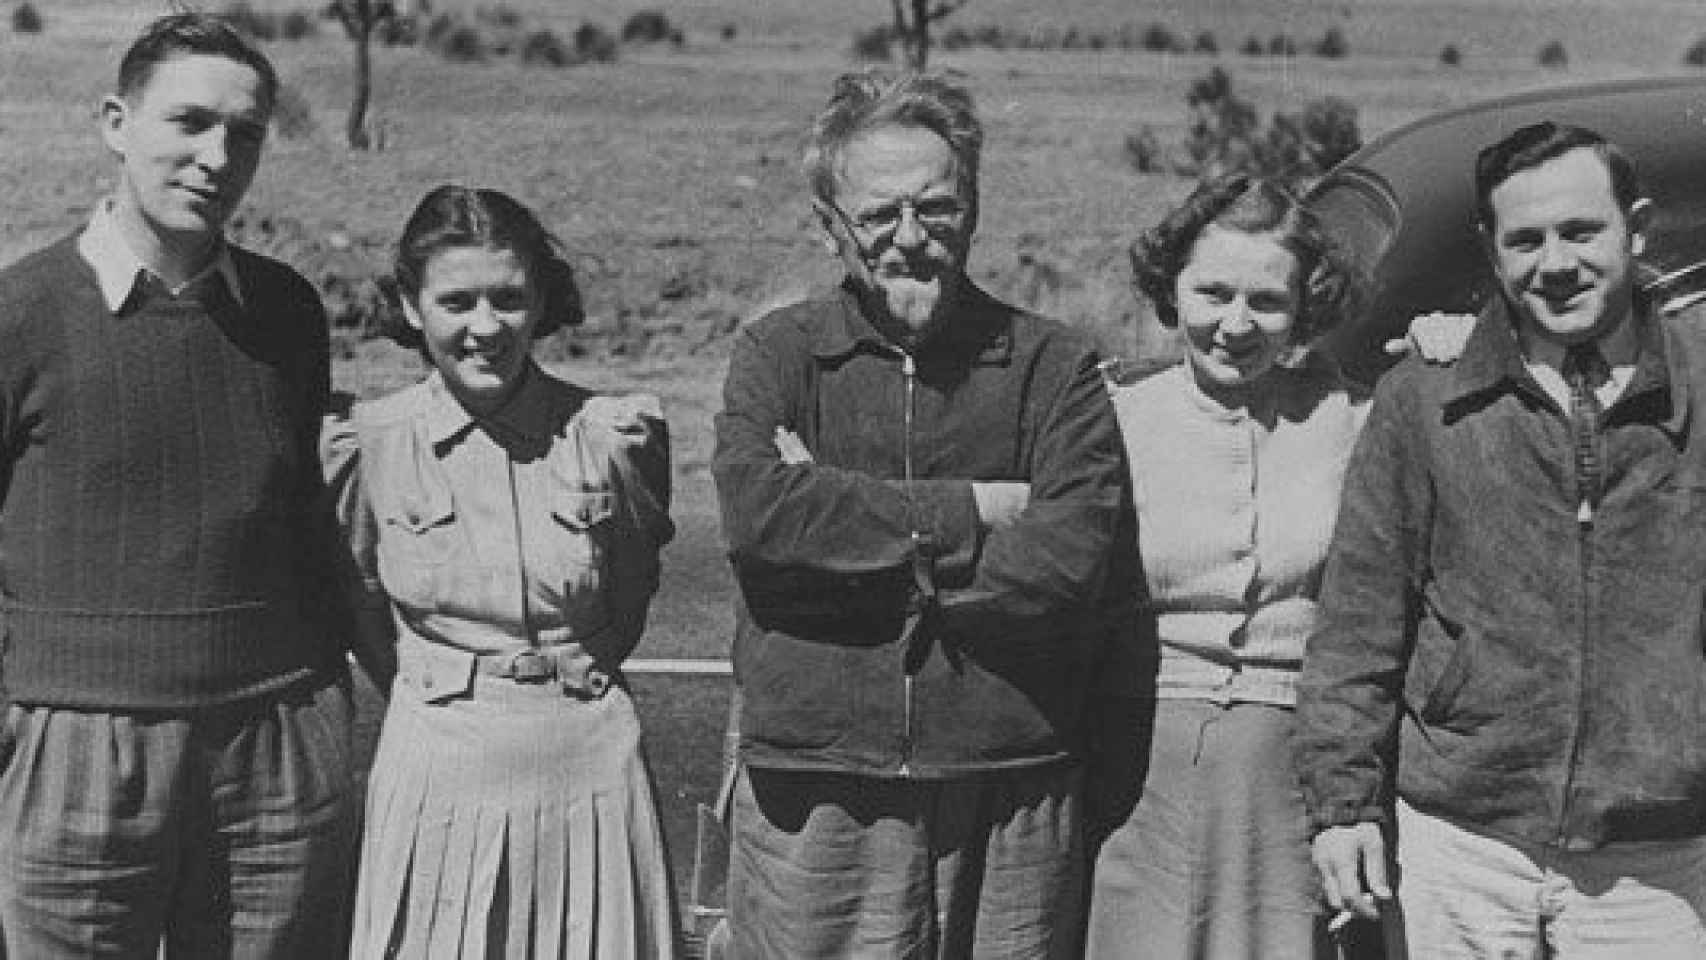 El líder revolucionario ruso León Trotski (centro de la imagen) junto a unos admiradores en México